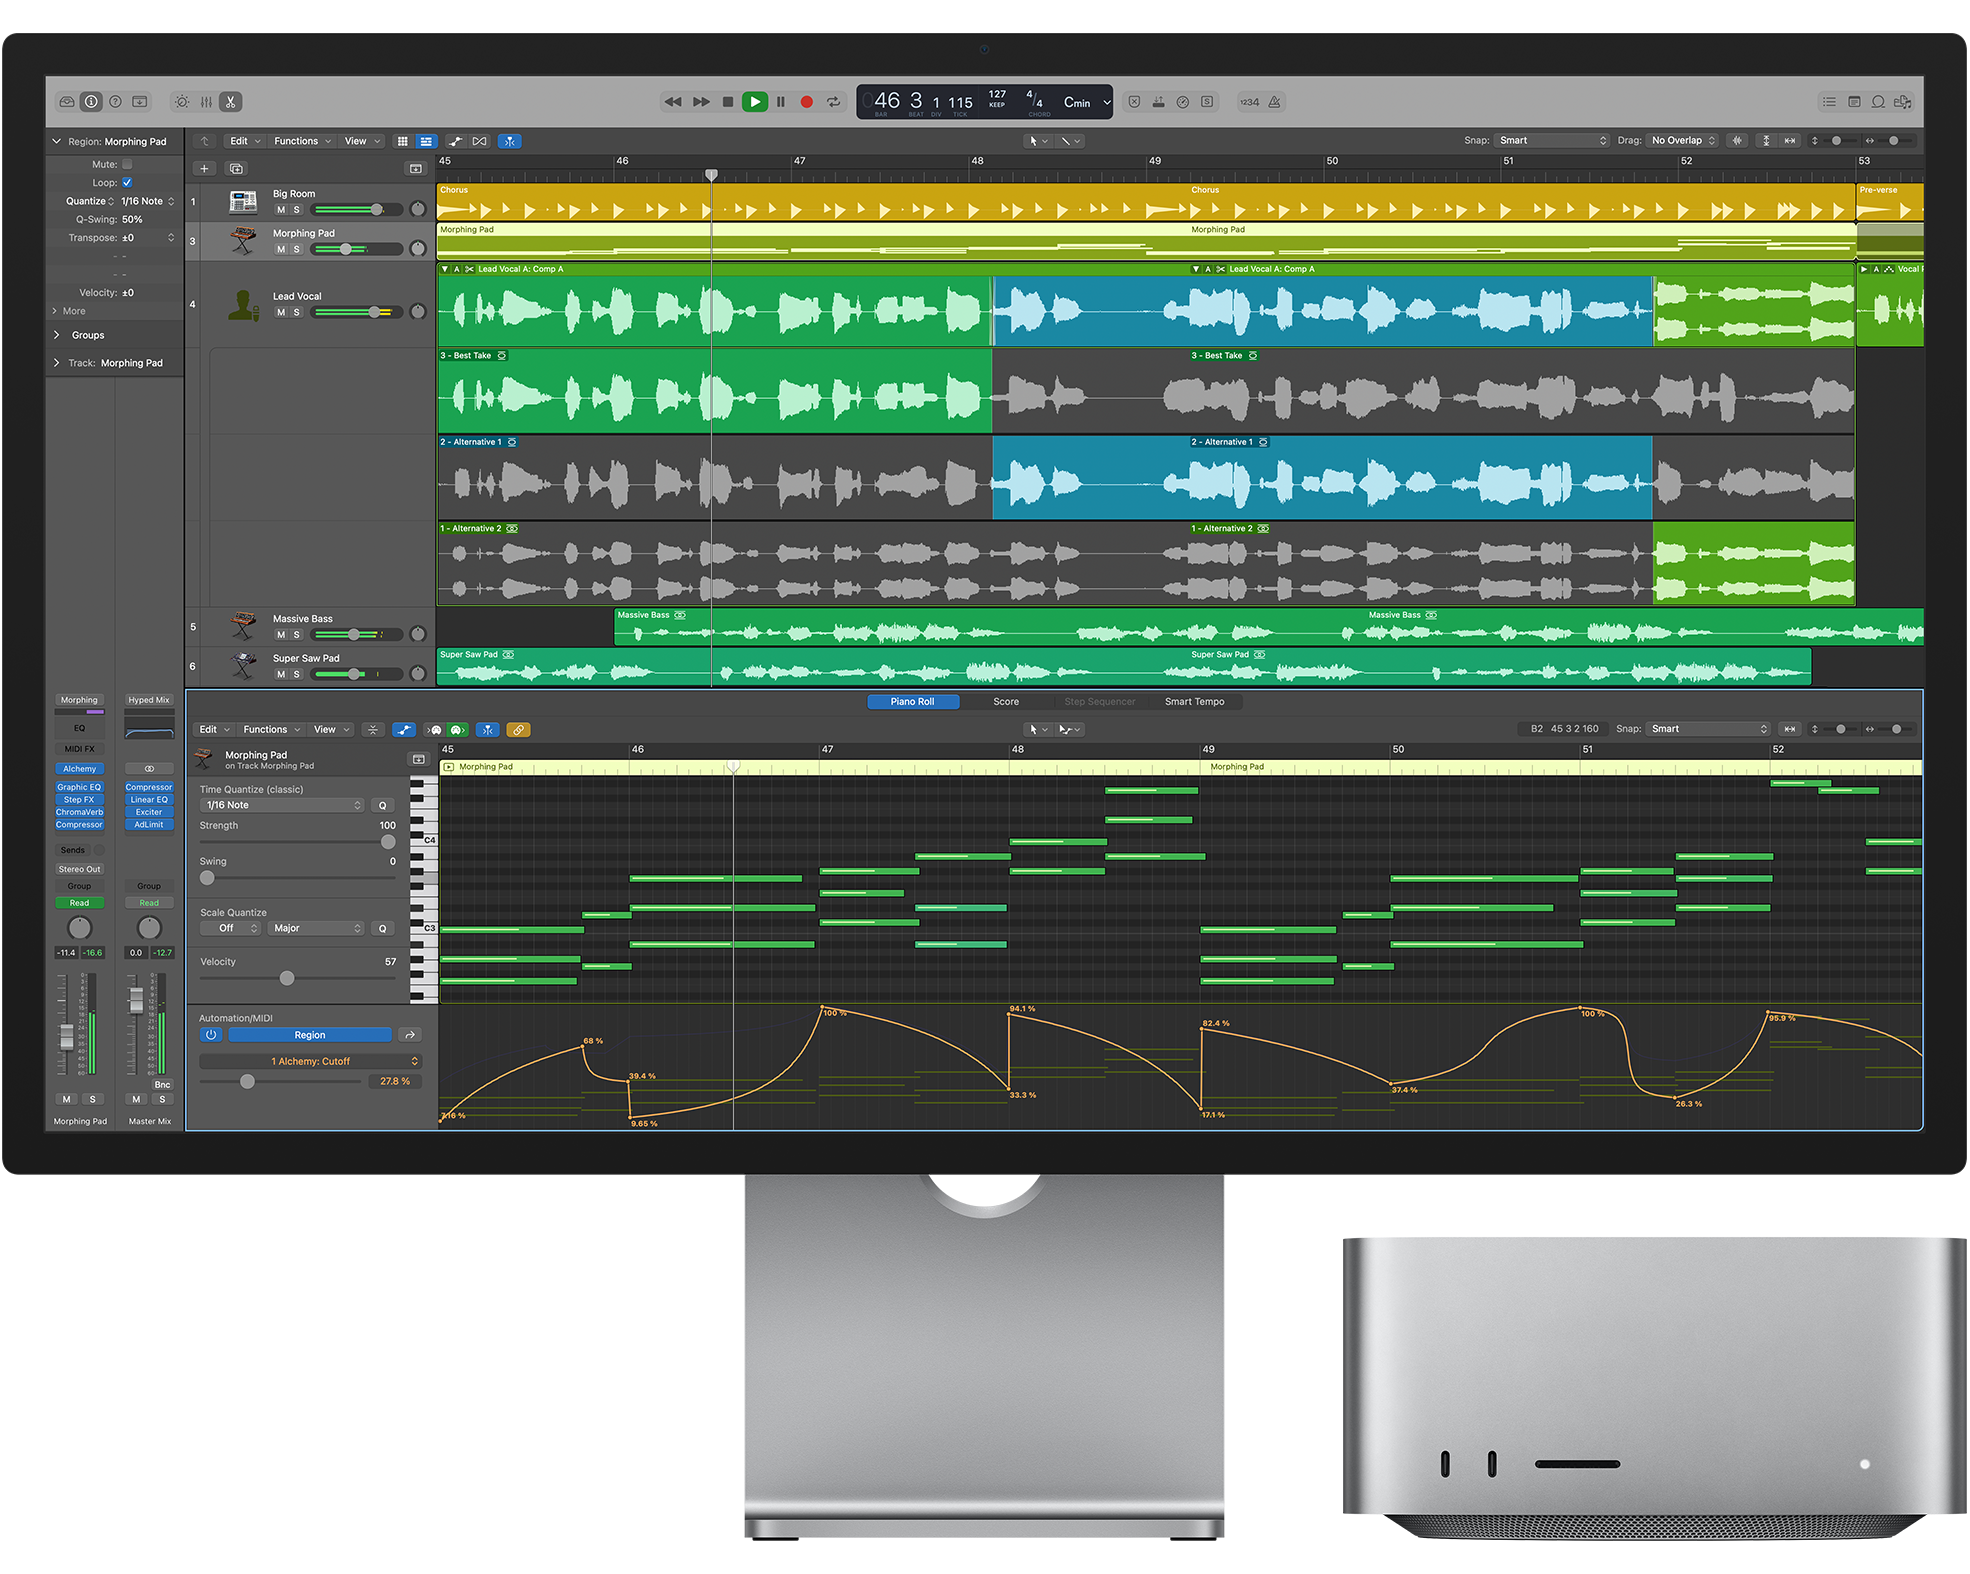 Para la mayor parte de productores con altas aspiraciones, Mac Studio quizá representa la opción más realista para acceder a la potencia de M2 Ultra (Mac Pro queda muy lejos por precio y extra de prestaciones)